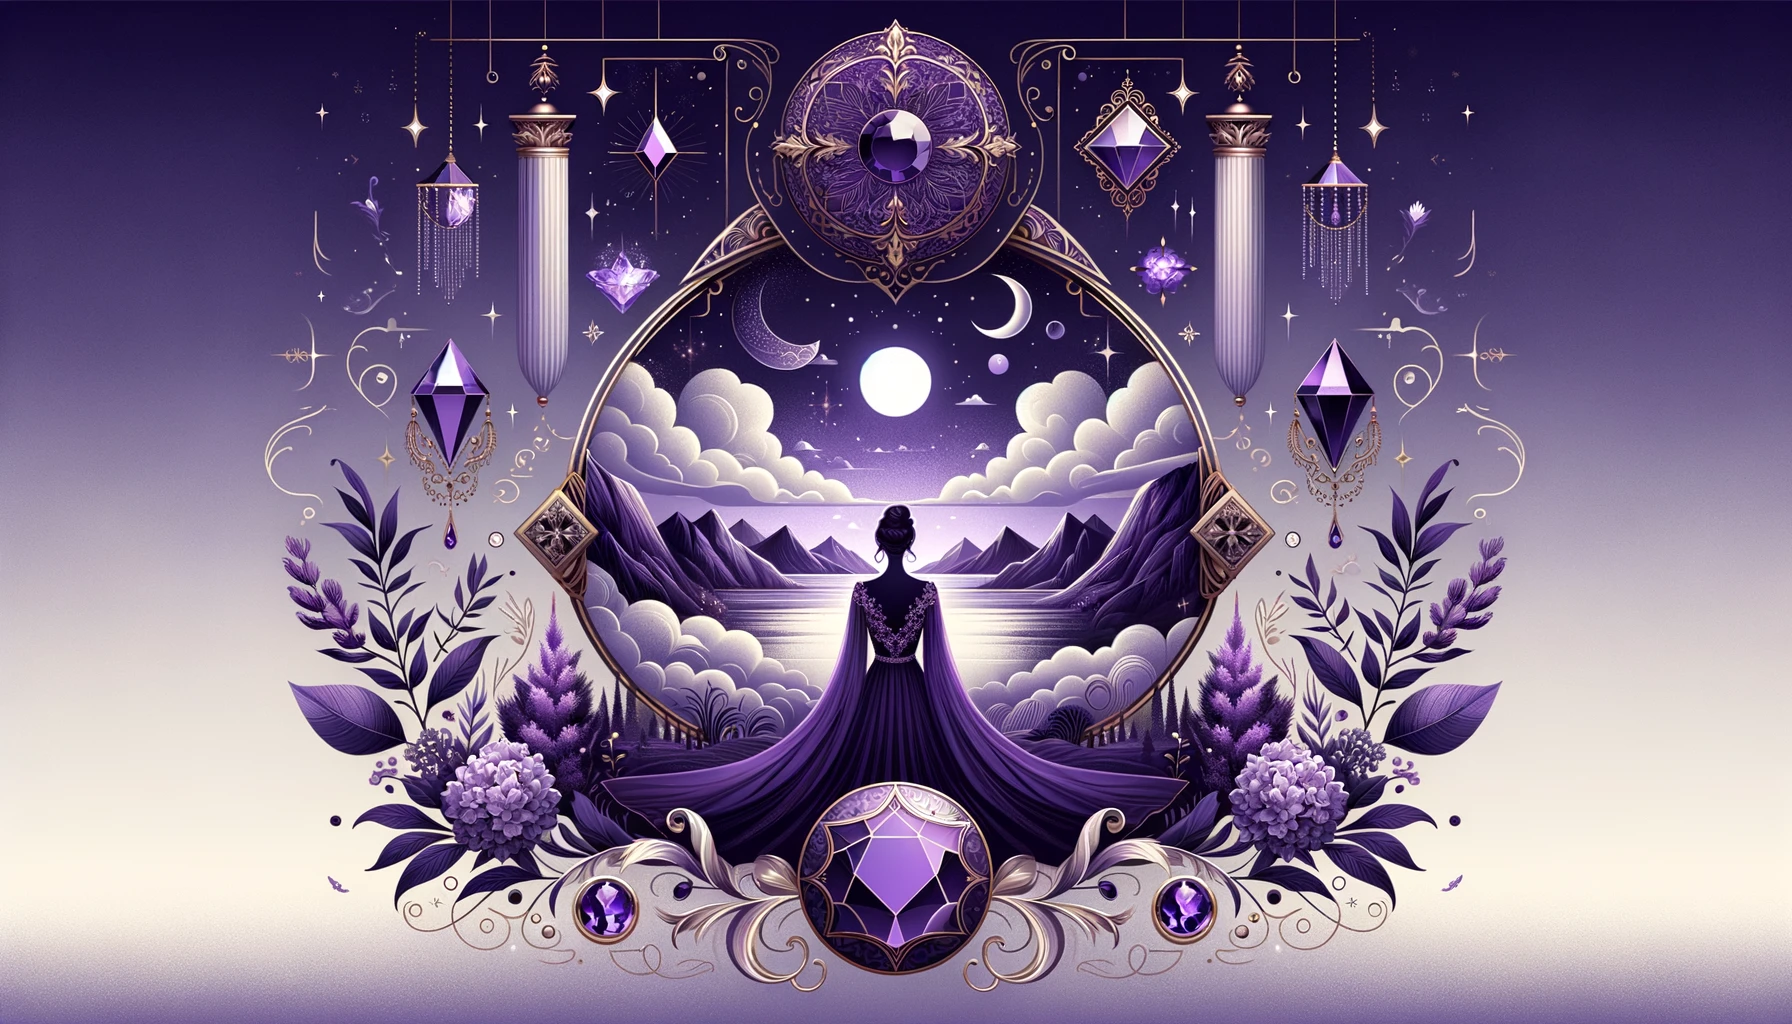 Violett symbolisiert Luxus, Weisheit und spirituelle Tiefe